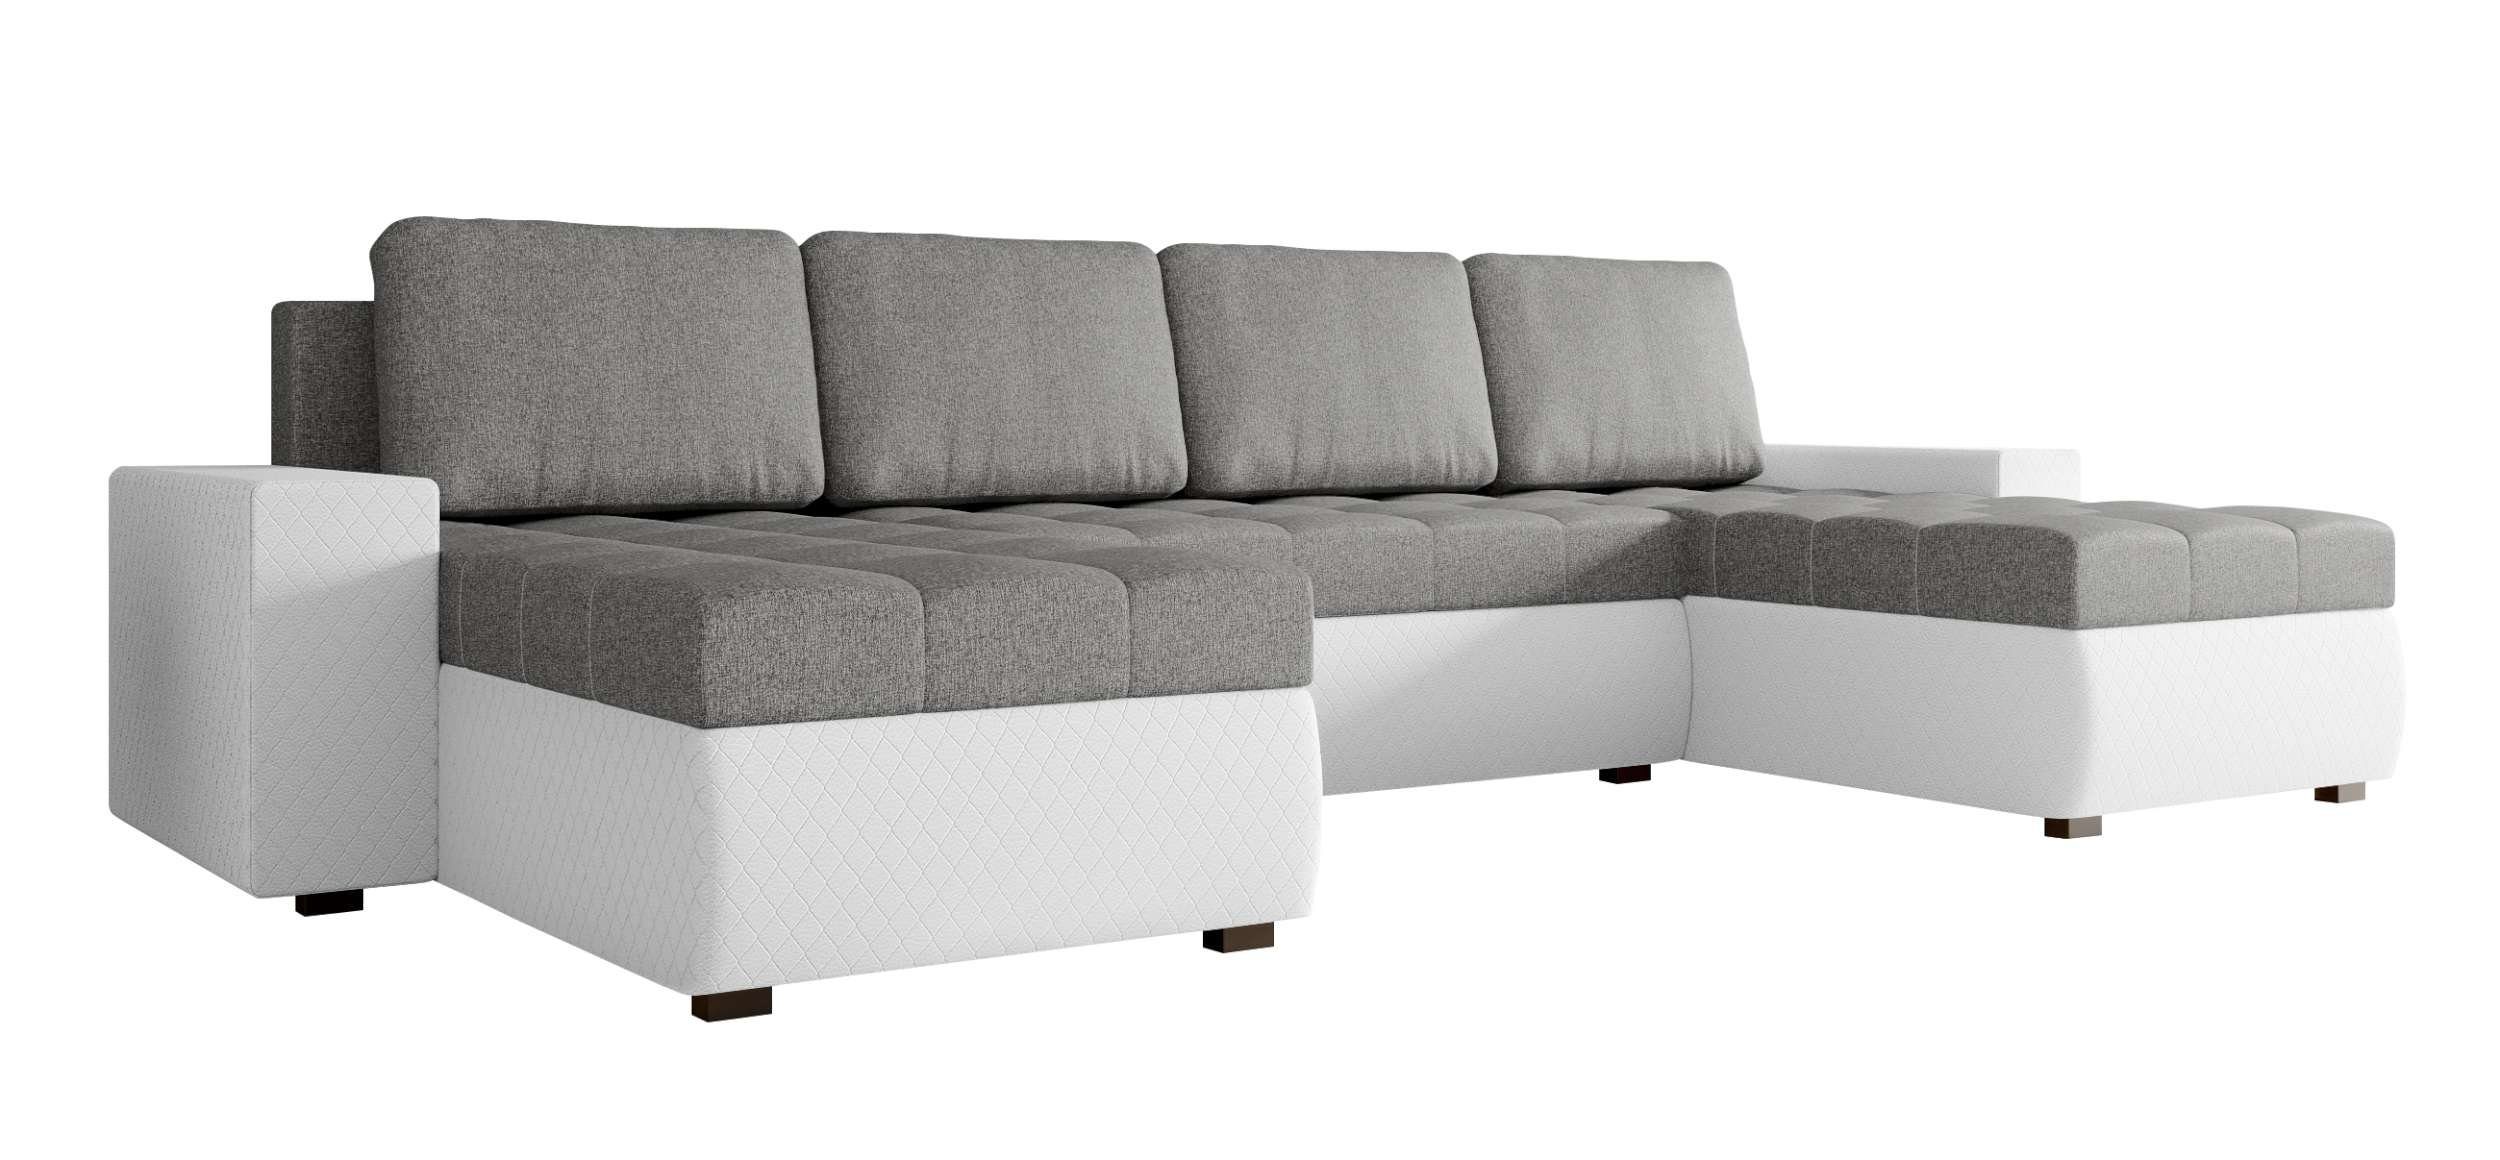 Stylefy Wohnlandschaft Amelia, Bettkasten, mit Modern Eckcouch, Bettfunktion, U-Form, mit Sitzkomfort, Design Sofa